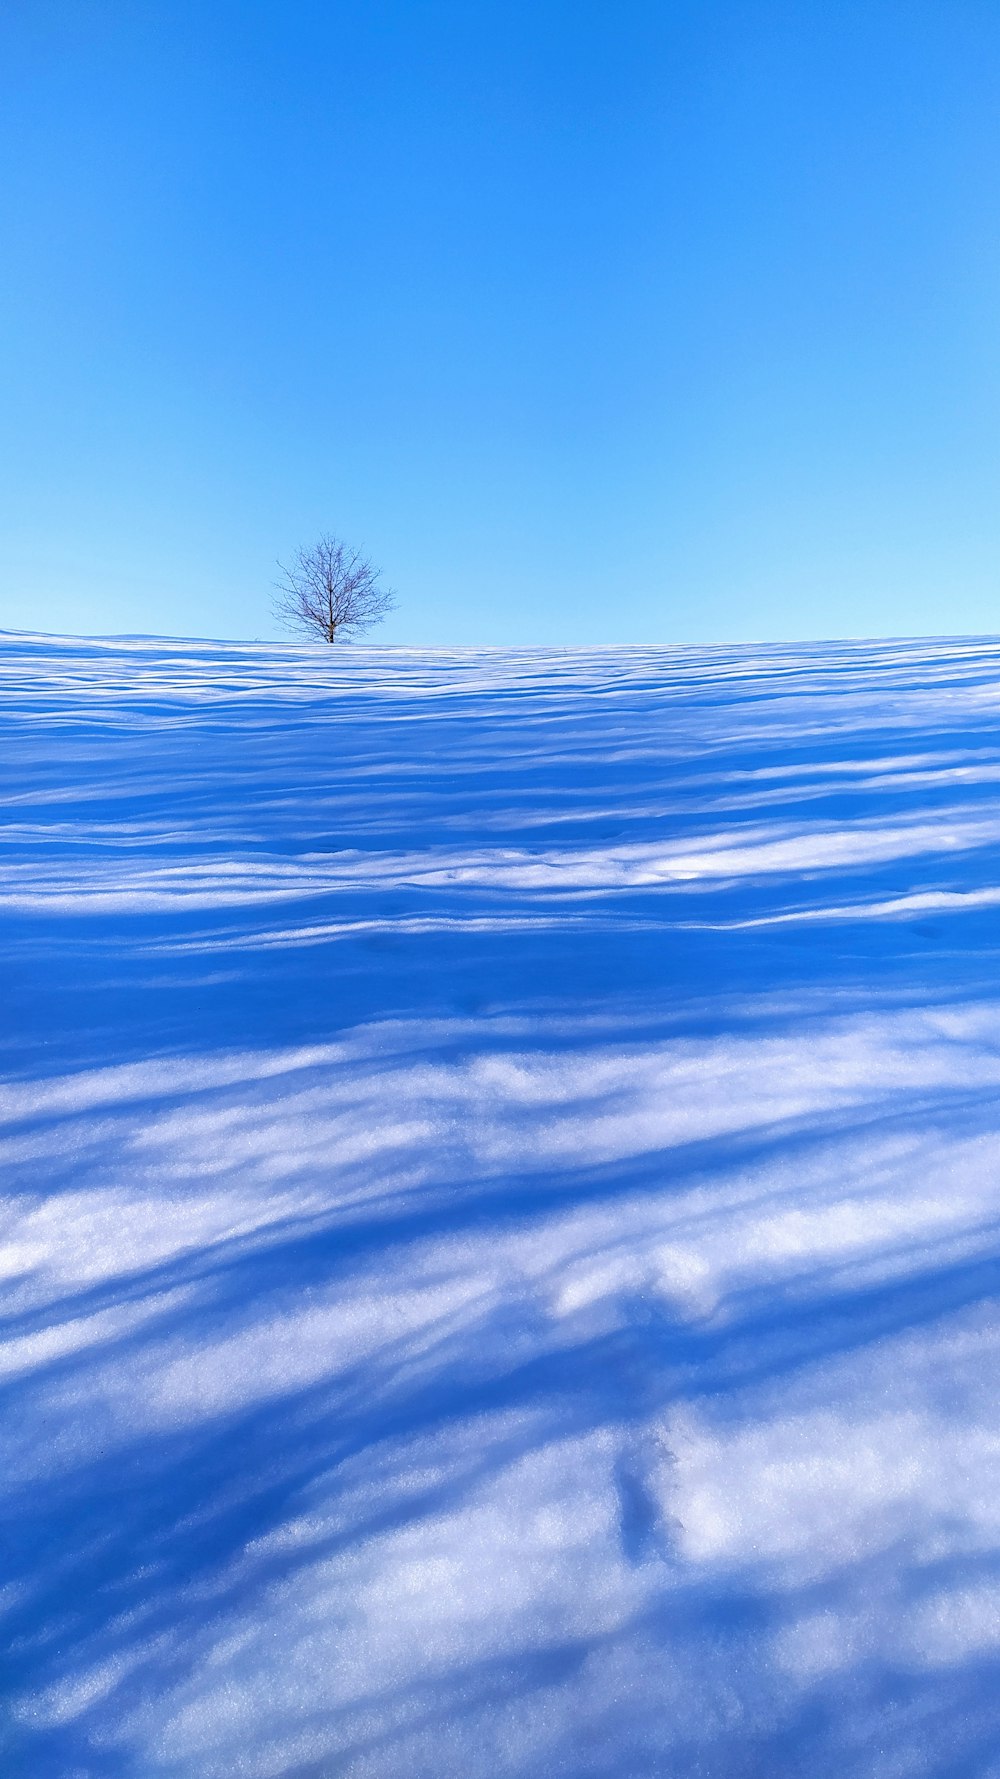 Un árbol solitario en medio de una vasta extensión de nieve